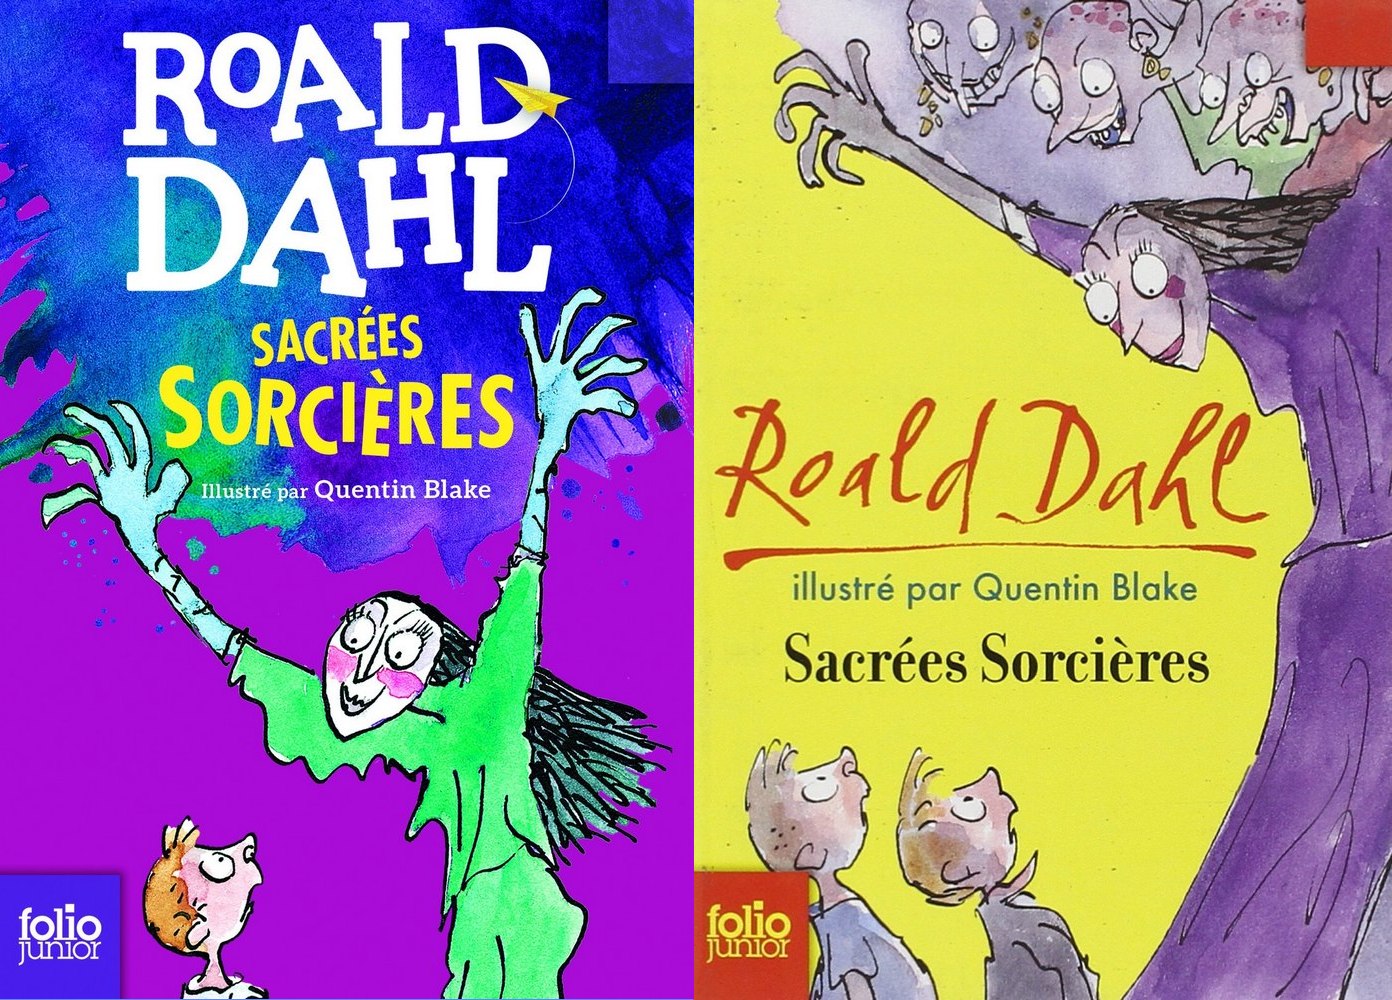 Actualité éditoriale : La refonte visuelle des romans de Roald Dahl par  Gallimard Jeunesse - La Bibliothèque de Glow